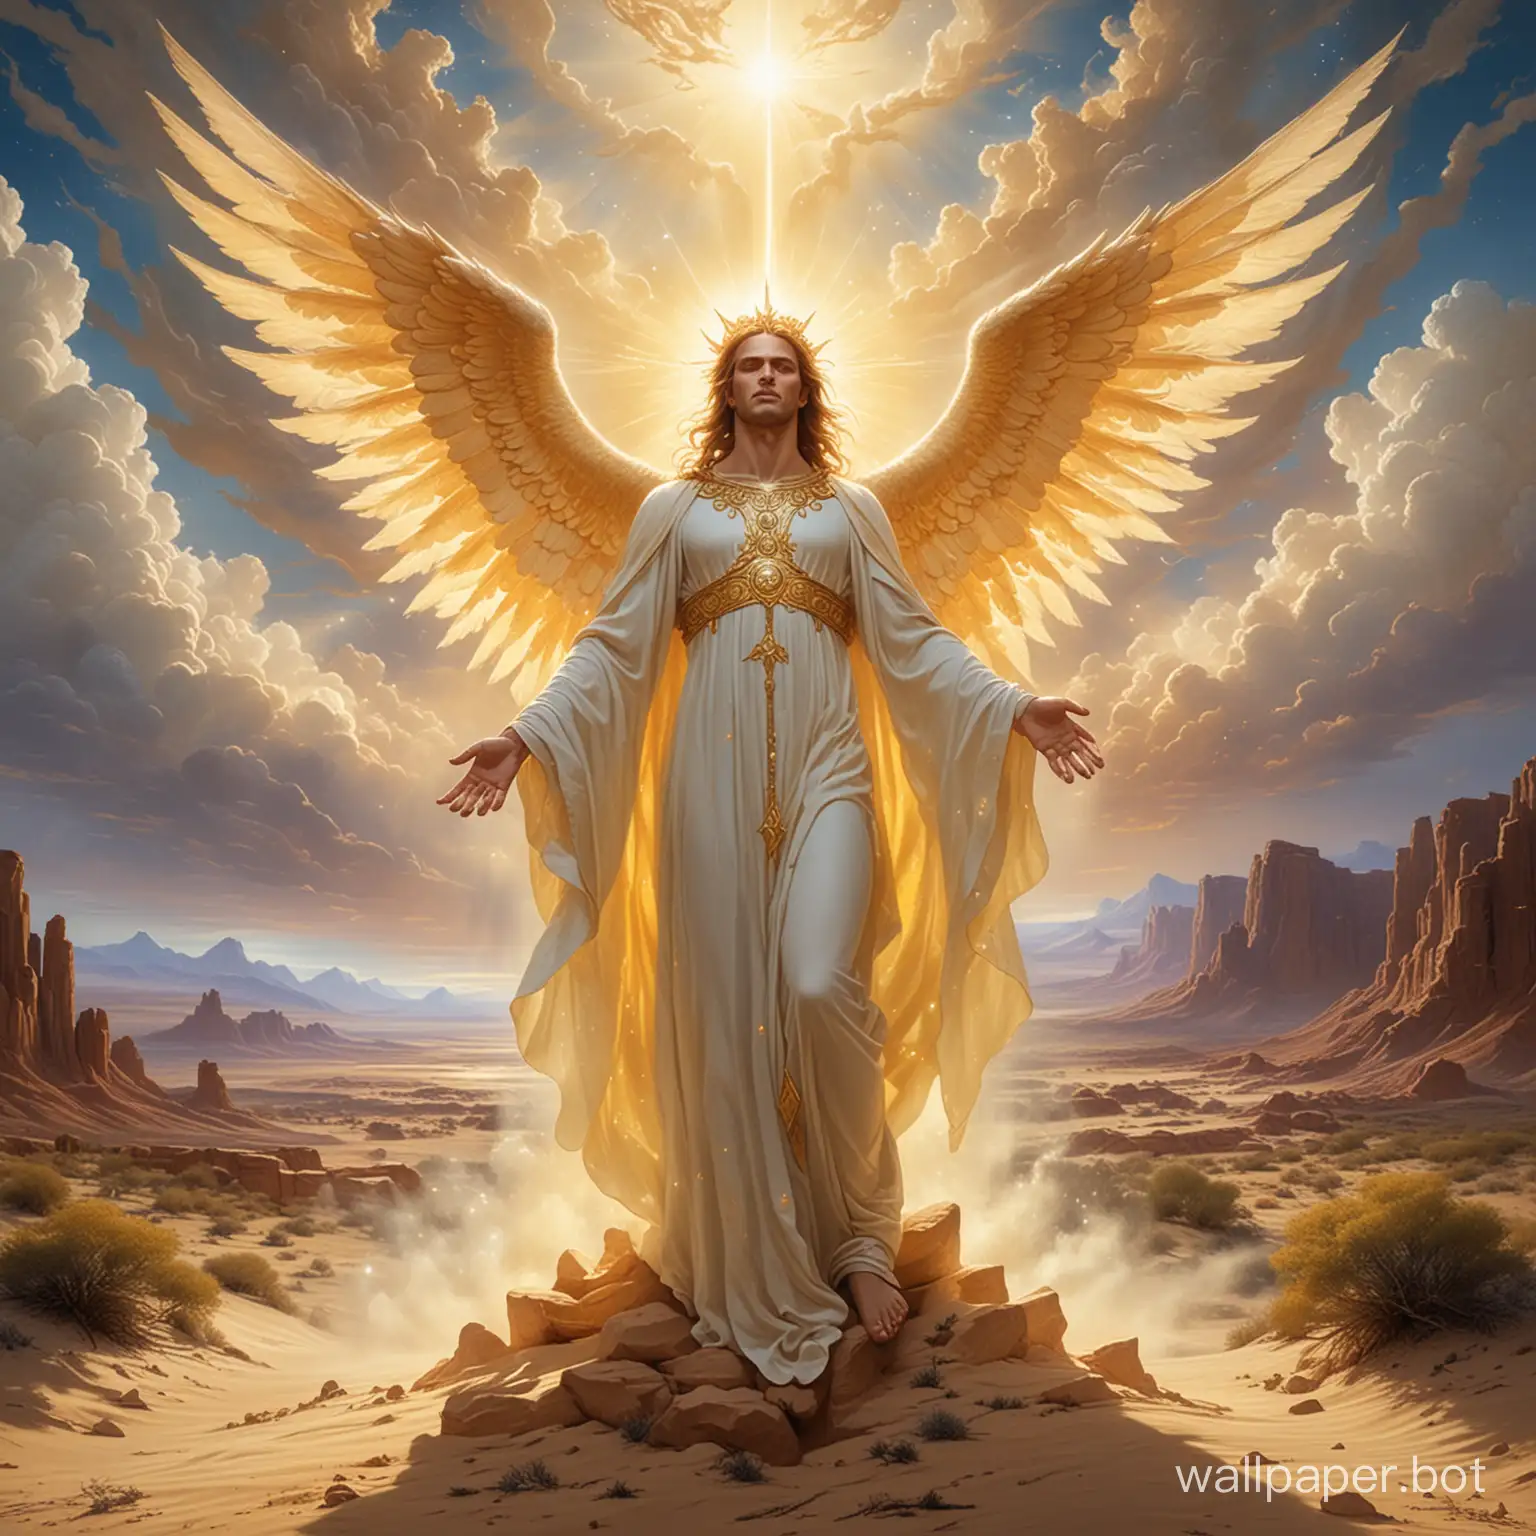 Celestial-Encounter-Archangel-Gabriel-Confronts-a-Fiery-Demon-in-the-Desert